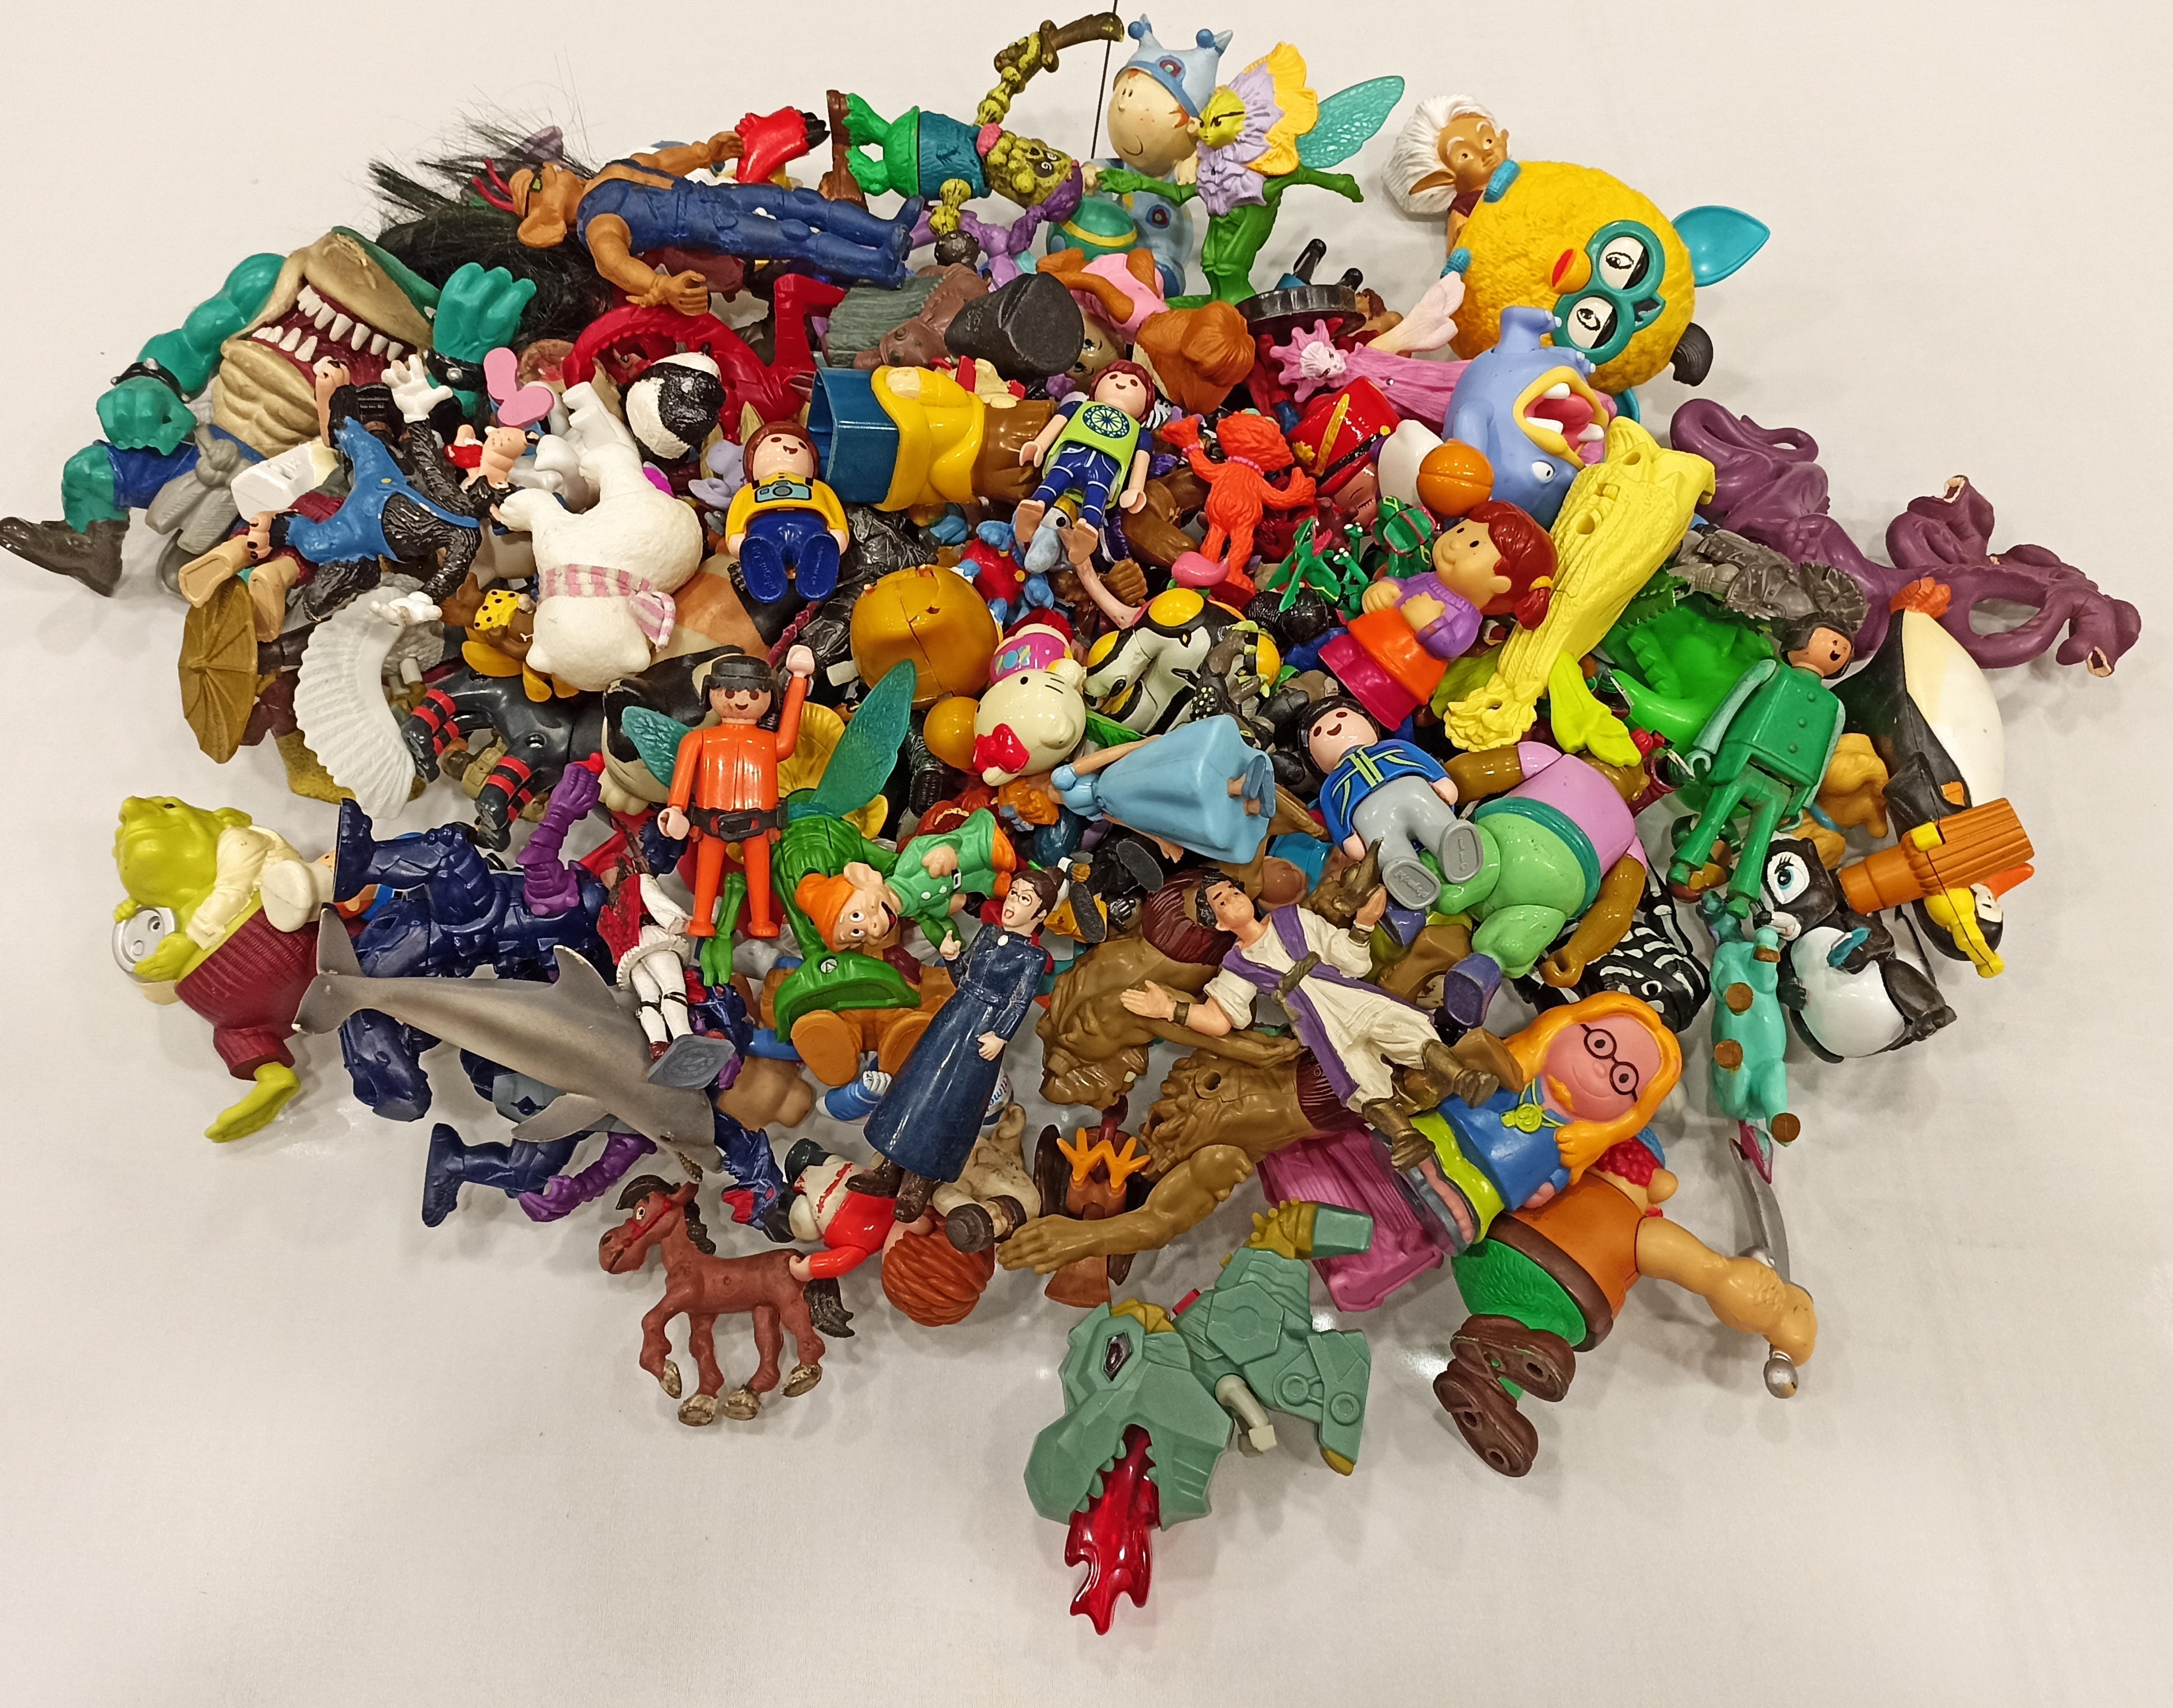 Gran lote de figuritas de plástico (superhéroes, princesas, animales...) Diferentes modelos y marcas